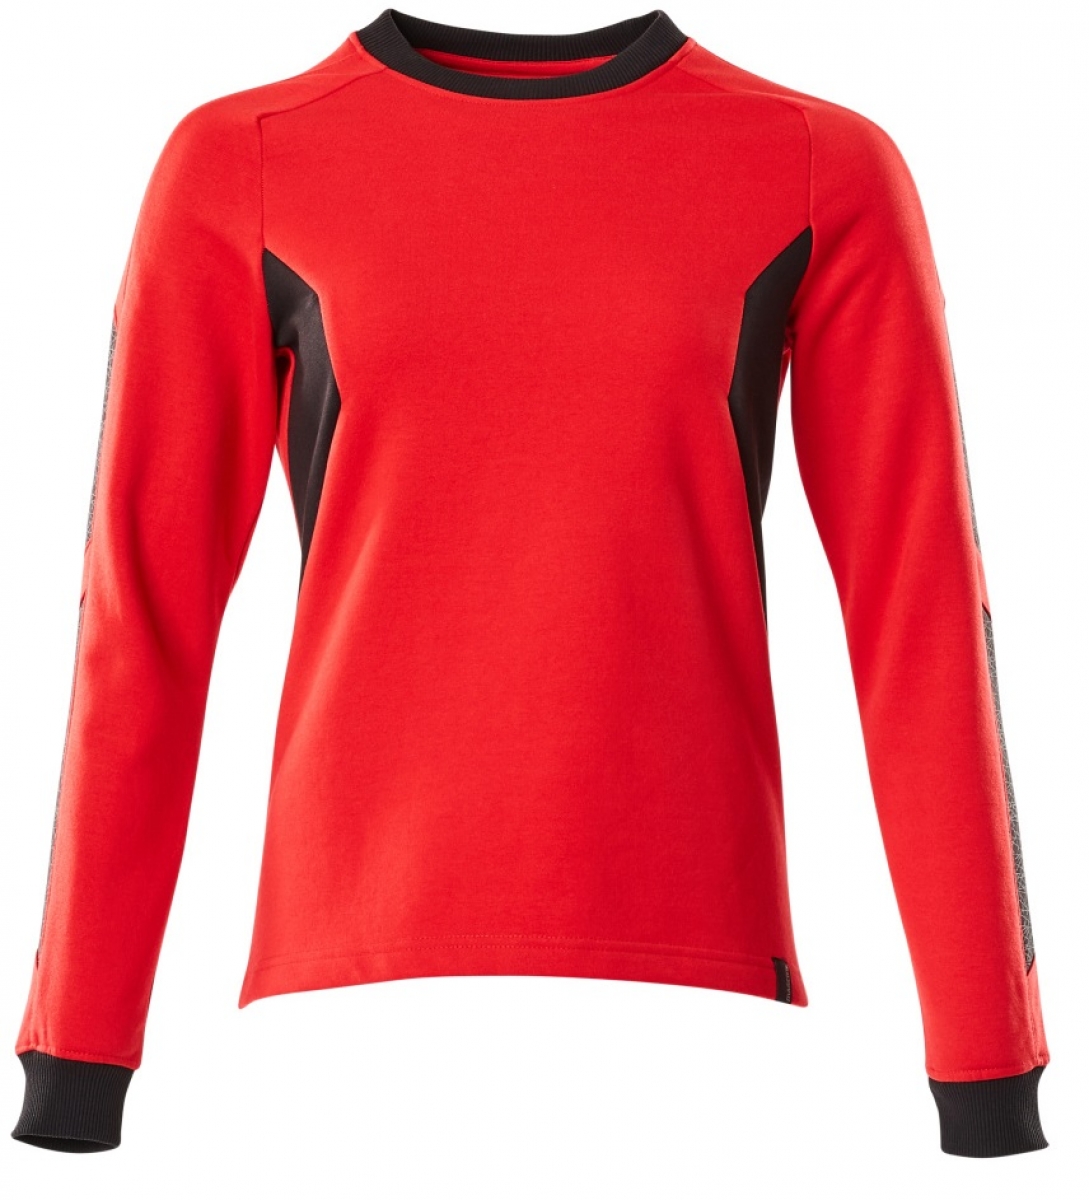 MASCOT-Worker-Shirts, Damen-Sweatshirt, 310 g/m, verkehrsrot/schwarz